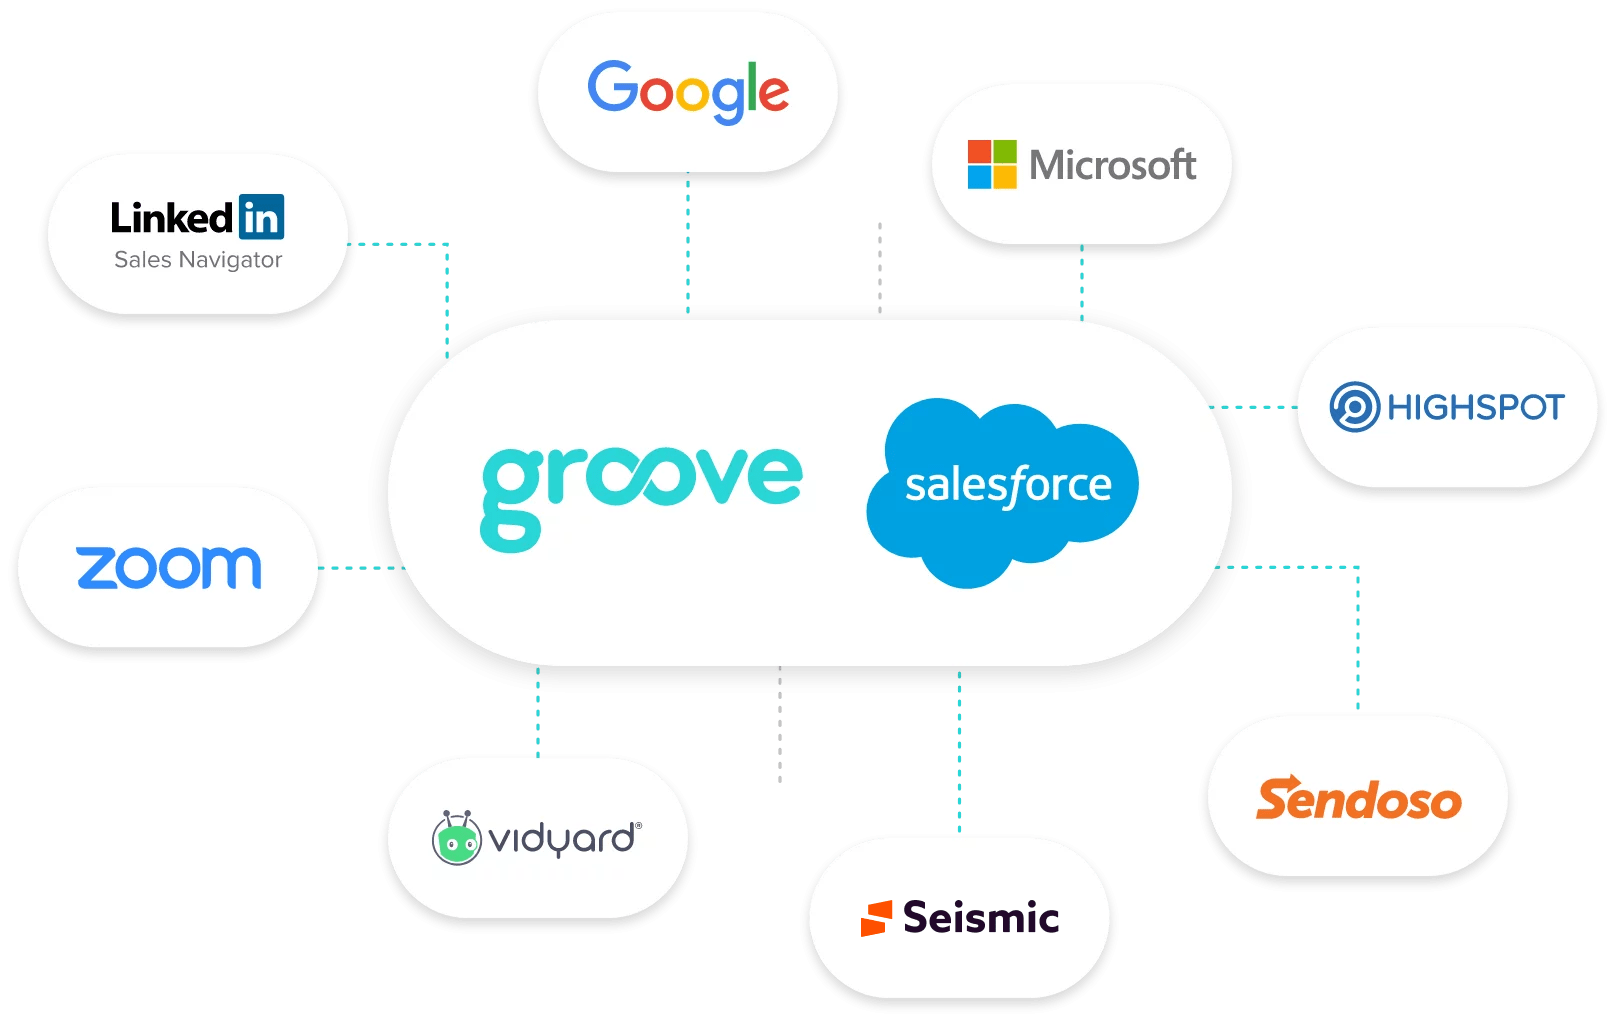 Groove Partner Network